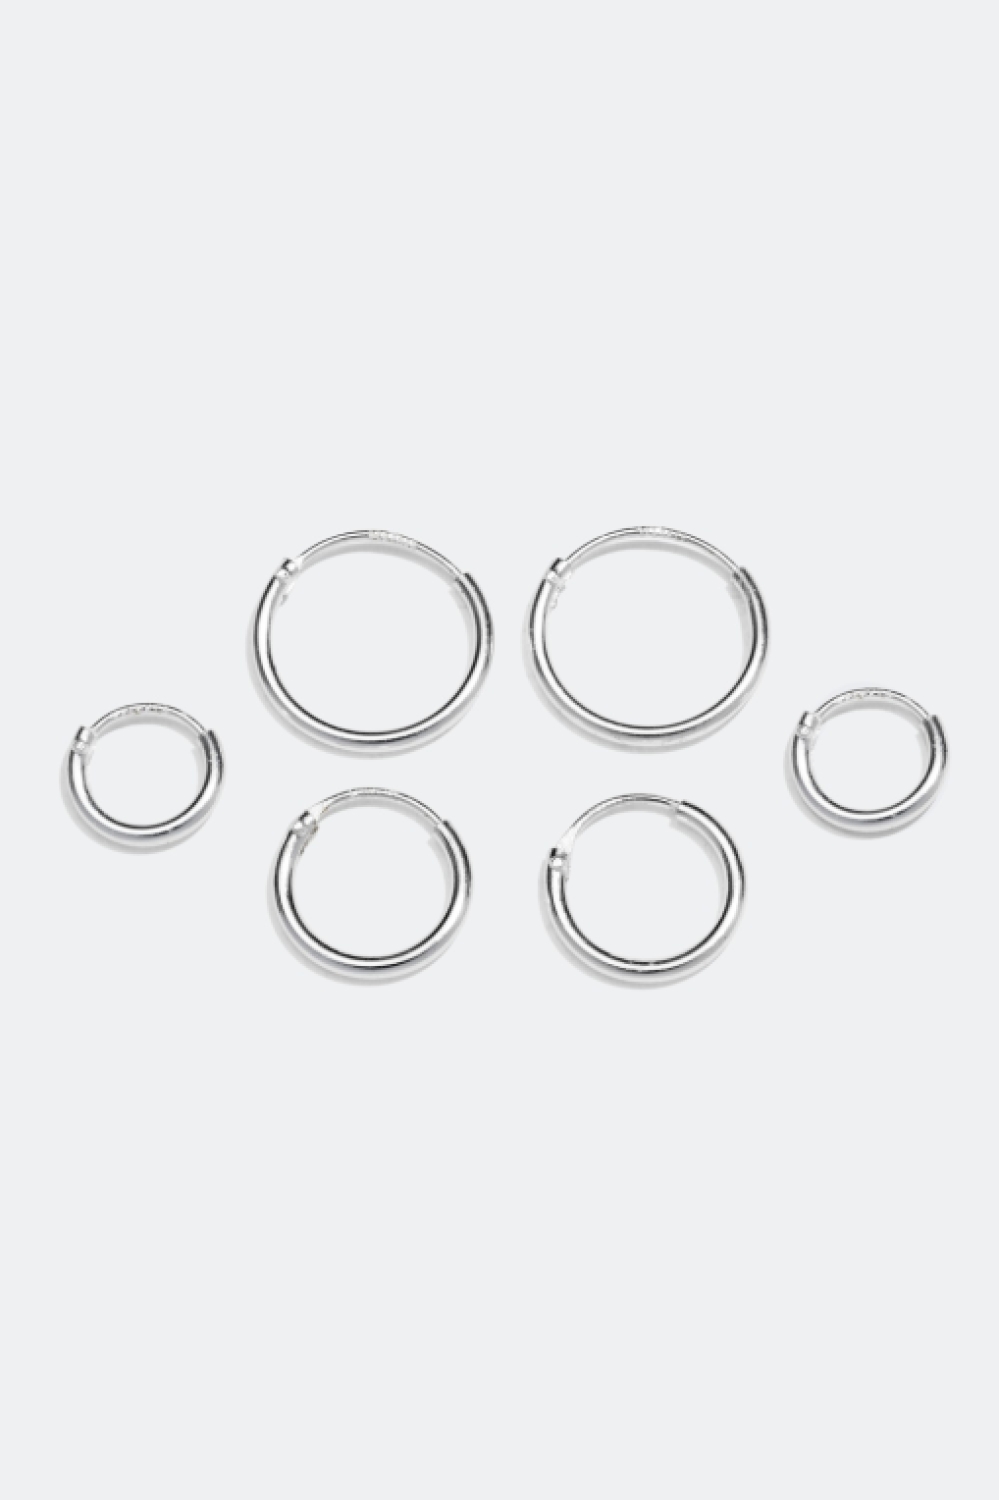 Øreringer i ekte sølv, 3-pakning, 1 cm i gruppen Ekte sølv / Sølvøredobber / Øreringer i ekte sølv hos Glitter (307411011000)